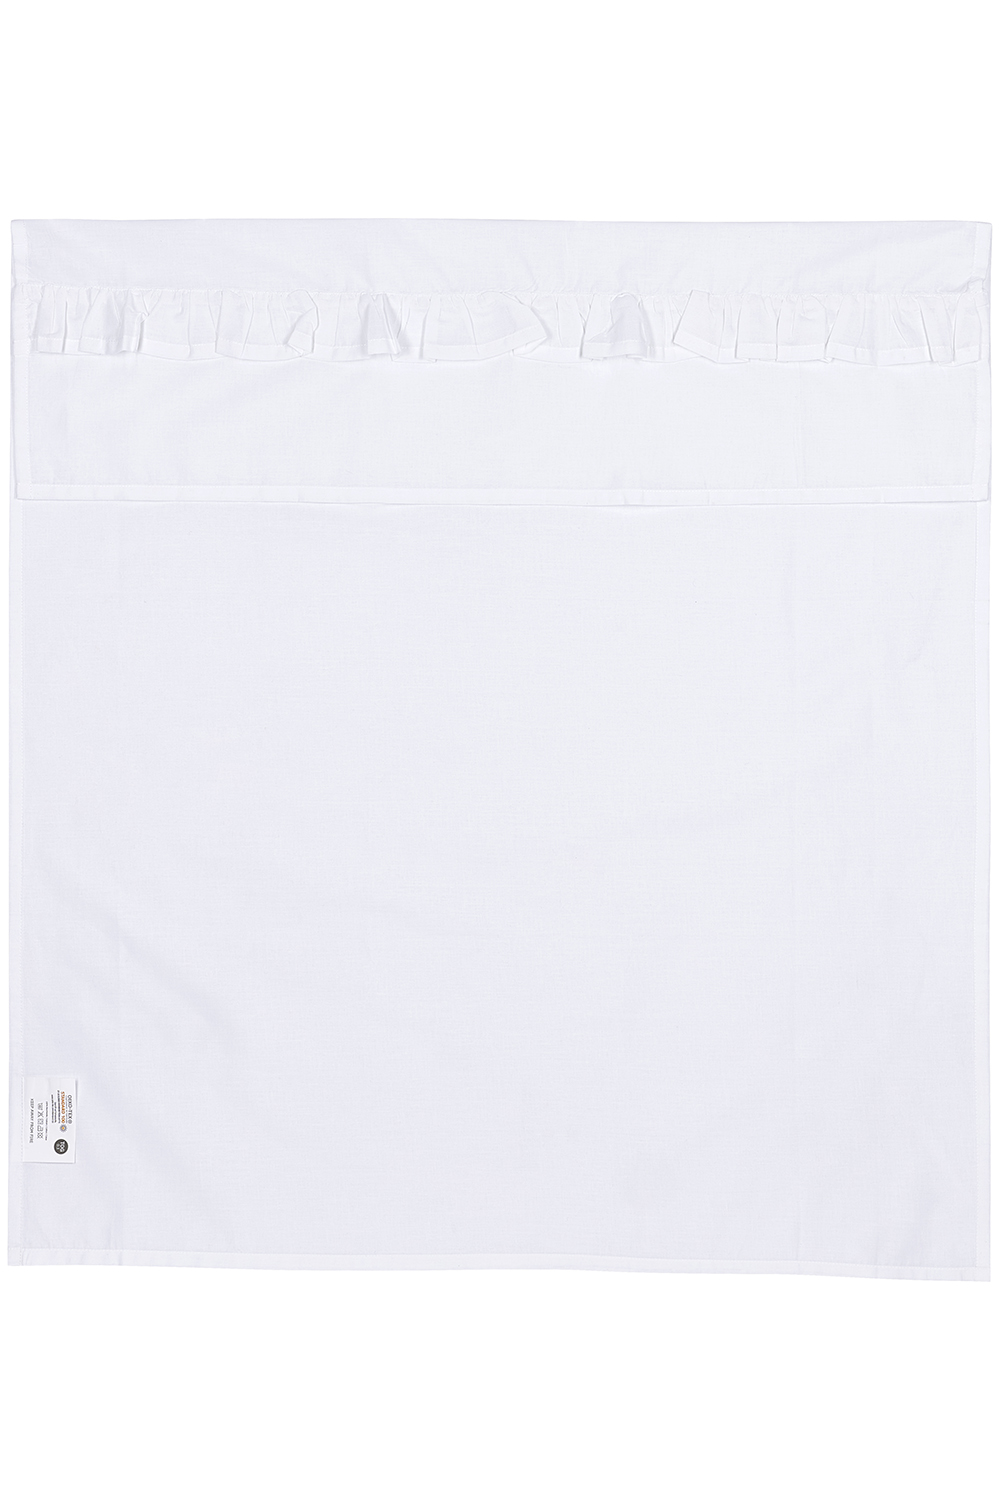 Wieglaken Ruffle - white - 75x100cm